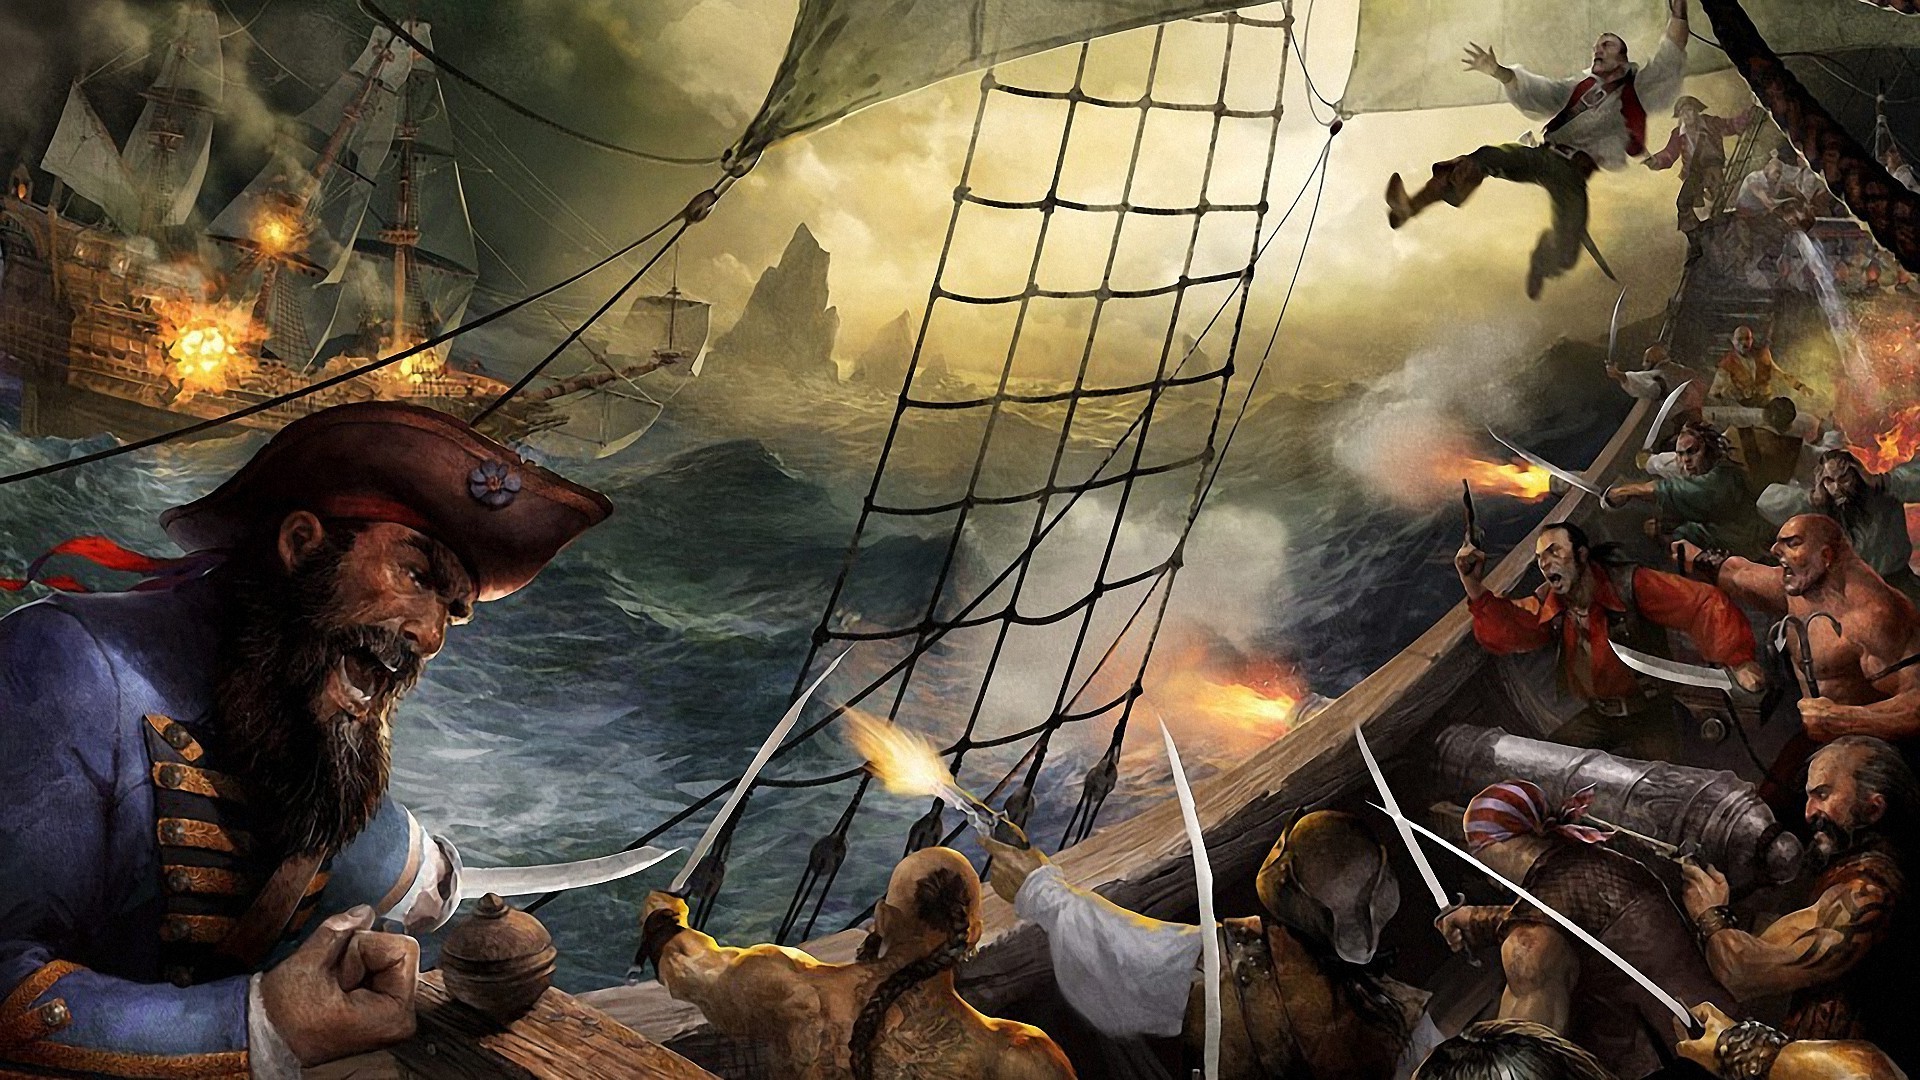 [Image: 197902-pirates-ship-war-artwork-fantasy_art.jpg]